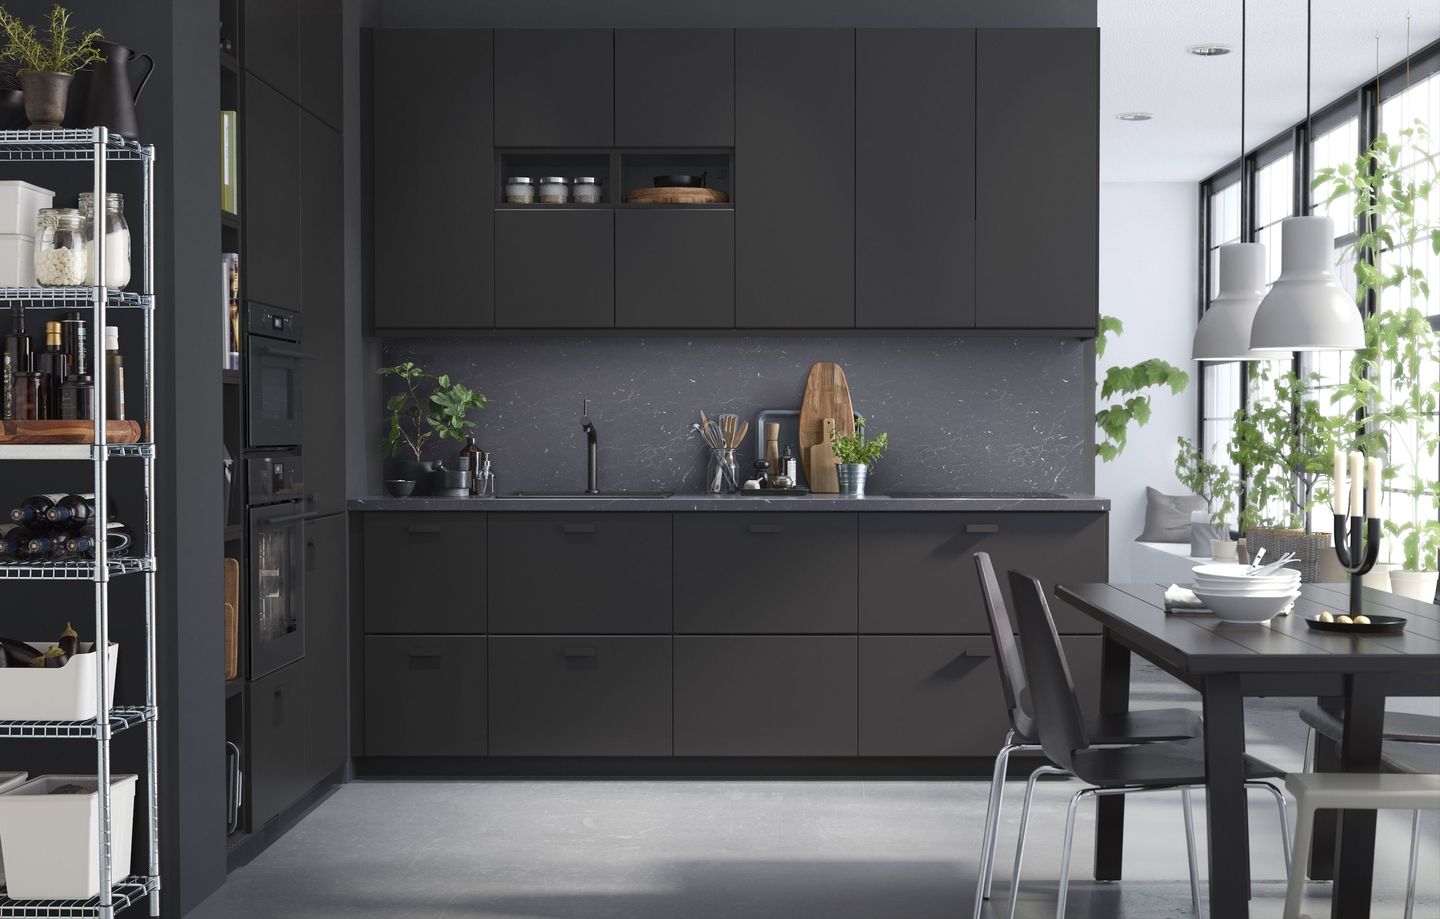 Desain dapur minimalis 3x2 hitam sangat elegan dan mewah.